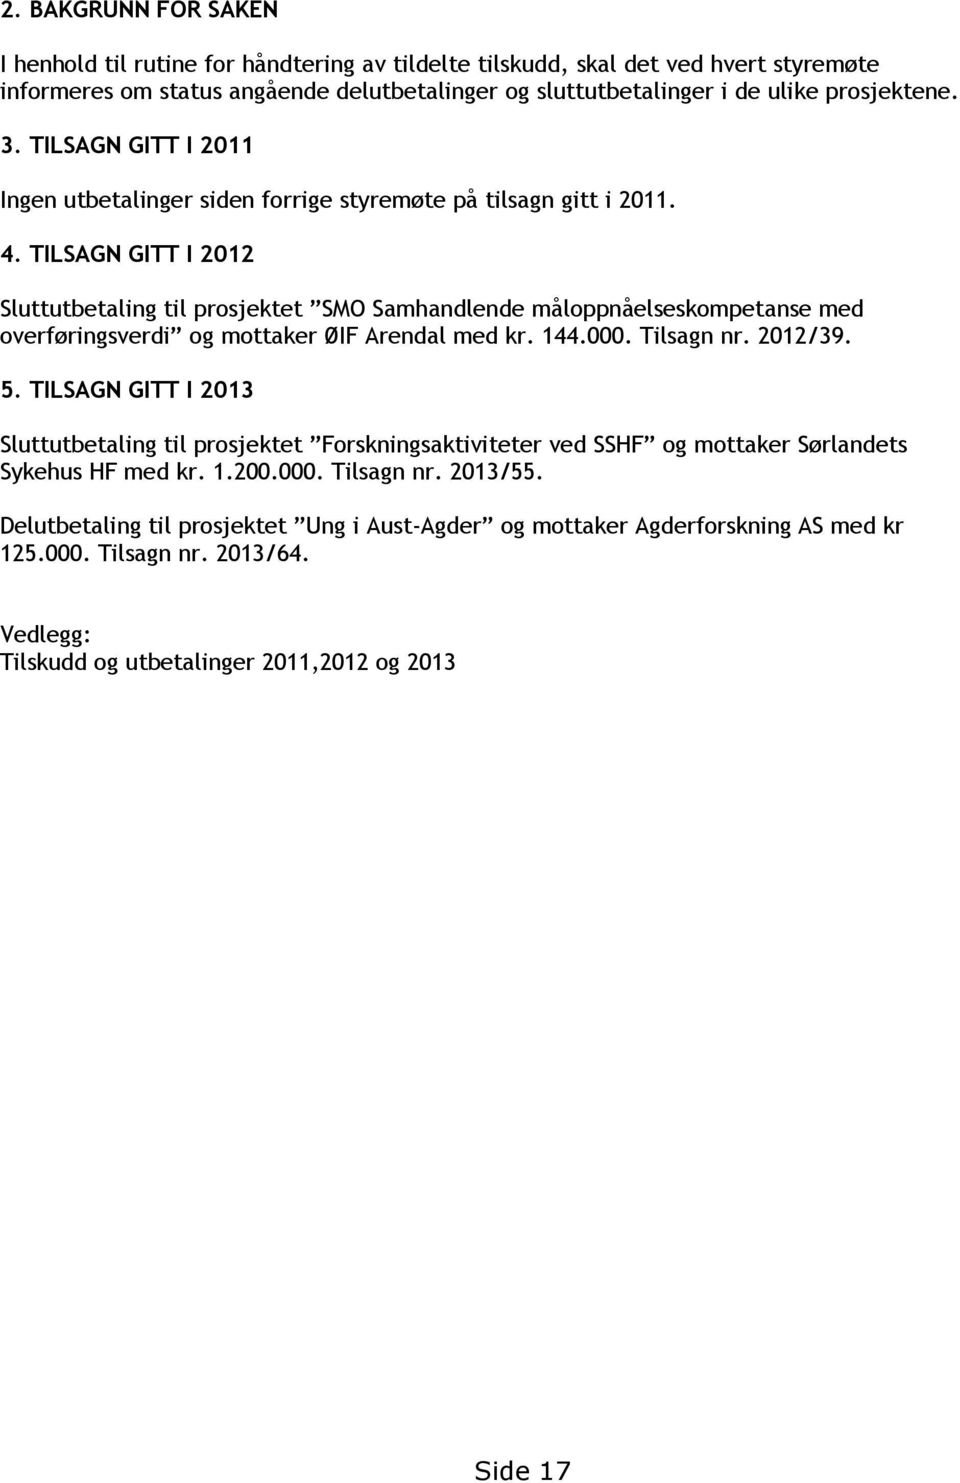 TILSAGN GITT I 2012 Sluttutbetaling til prosjektet SMO Samhandlende måloppnåelseskompetanse med overføringsverdi og mottaker ØIF Arendal med kr. 144.000. Tilsagn nr. 2012/39. 5.